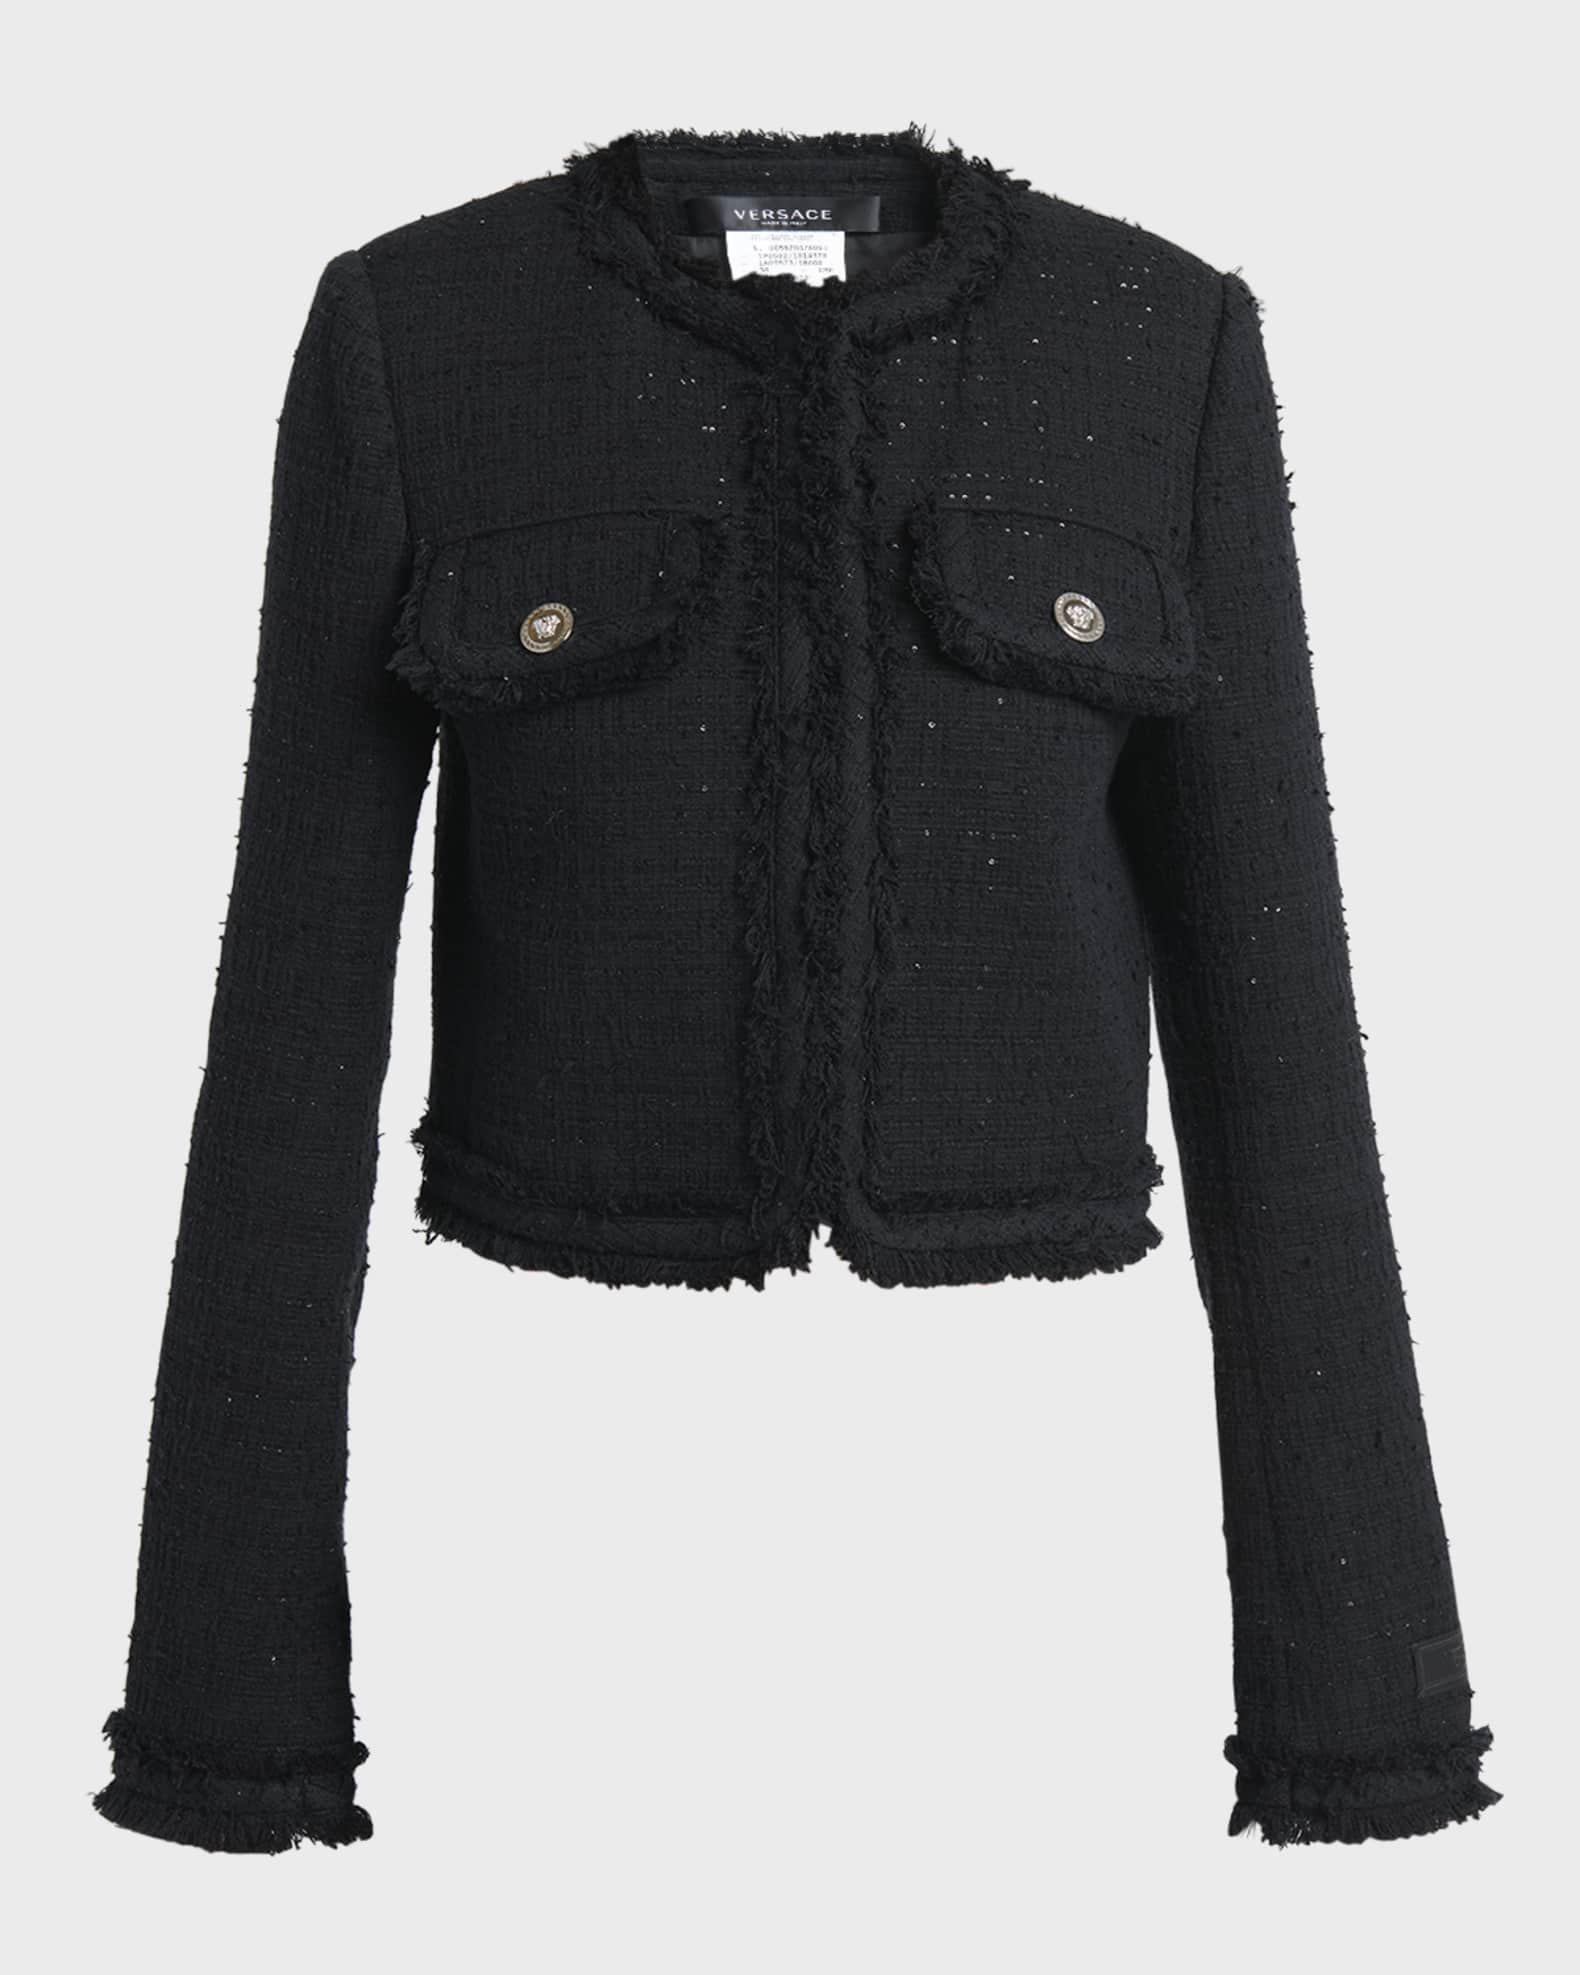 Versace Informal Fringe Tweed Jacket | Neiman Marcus